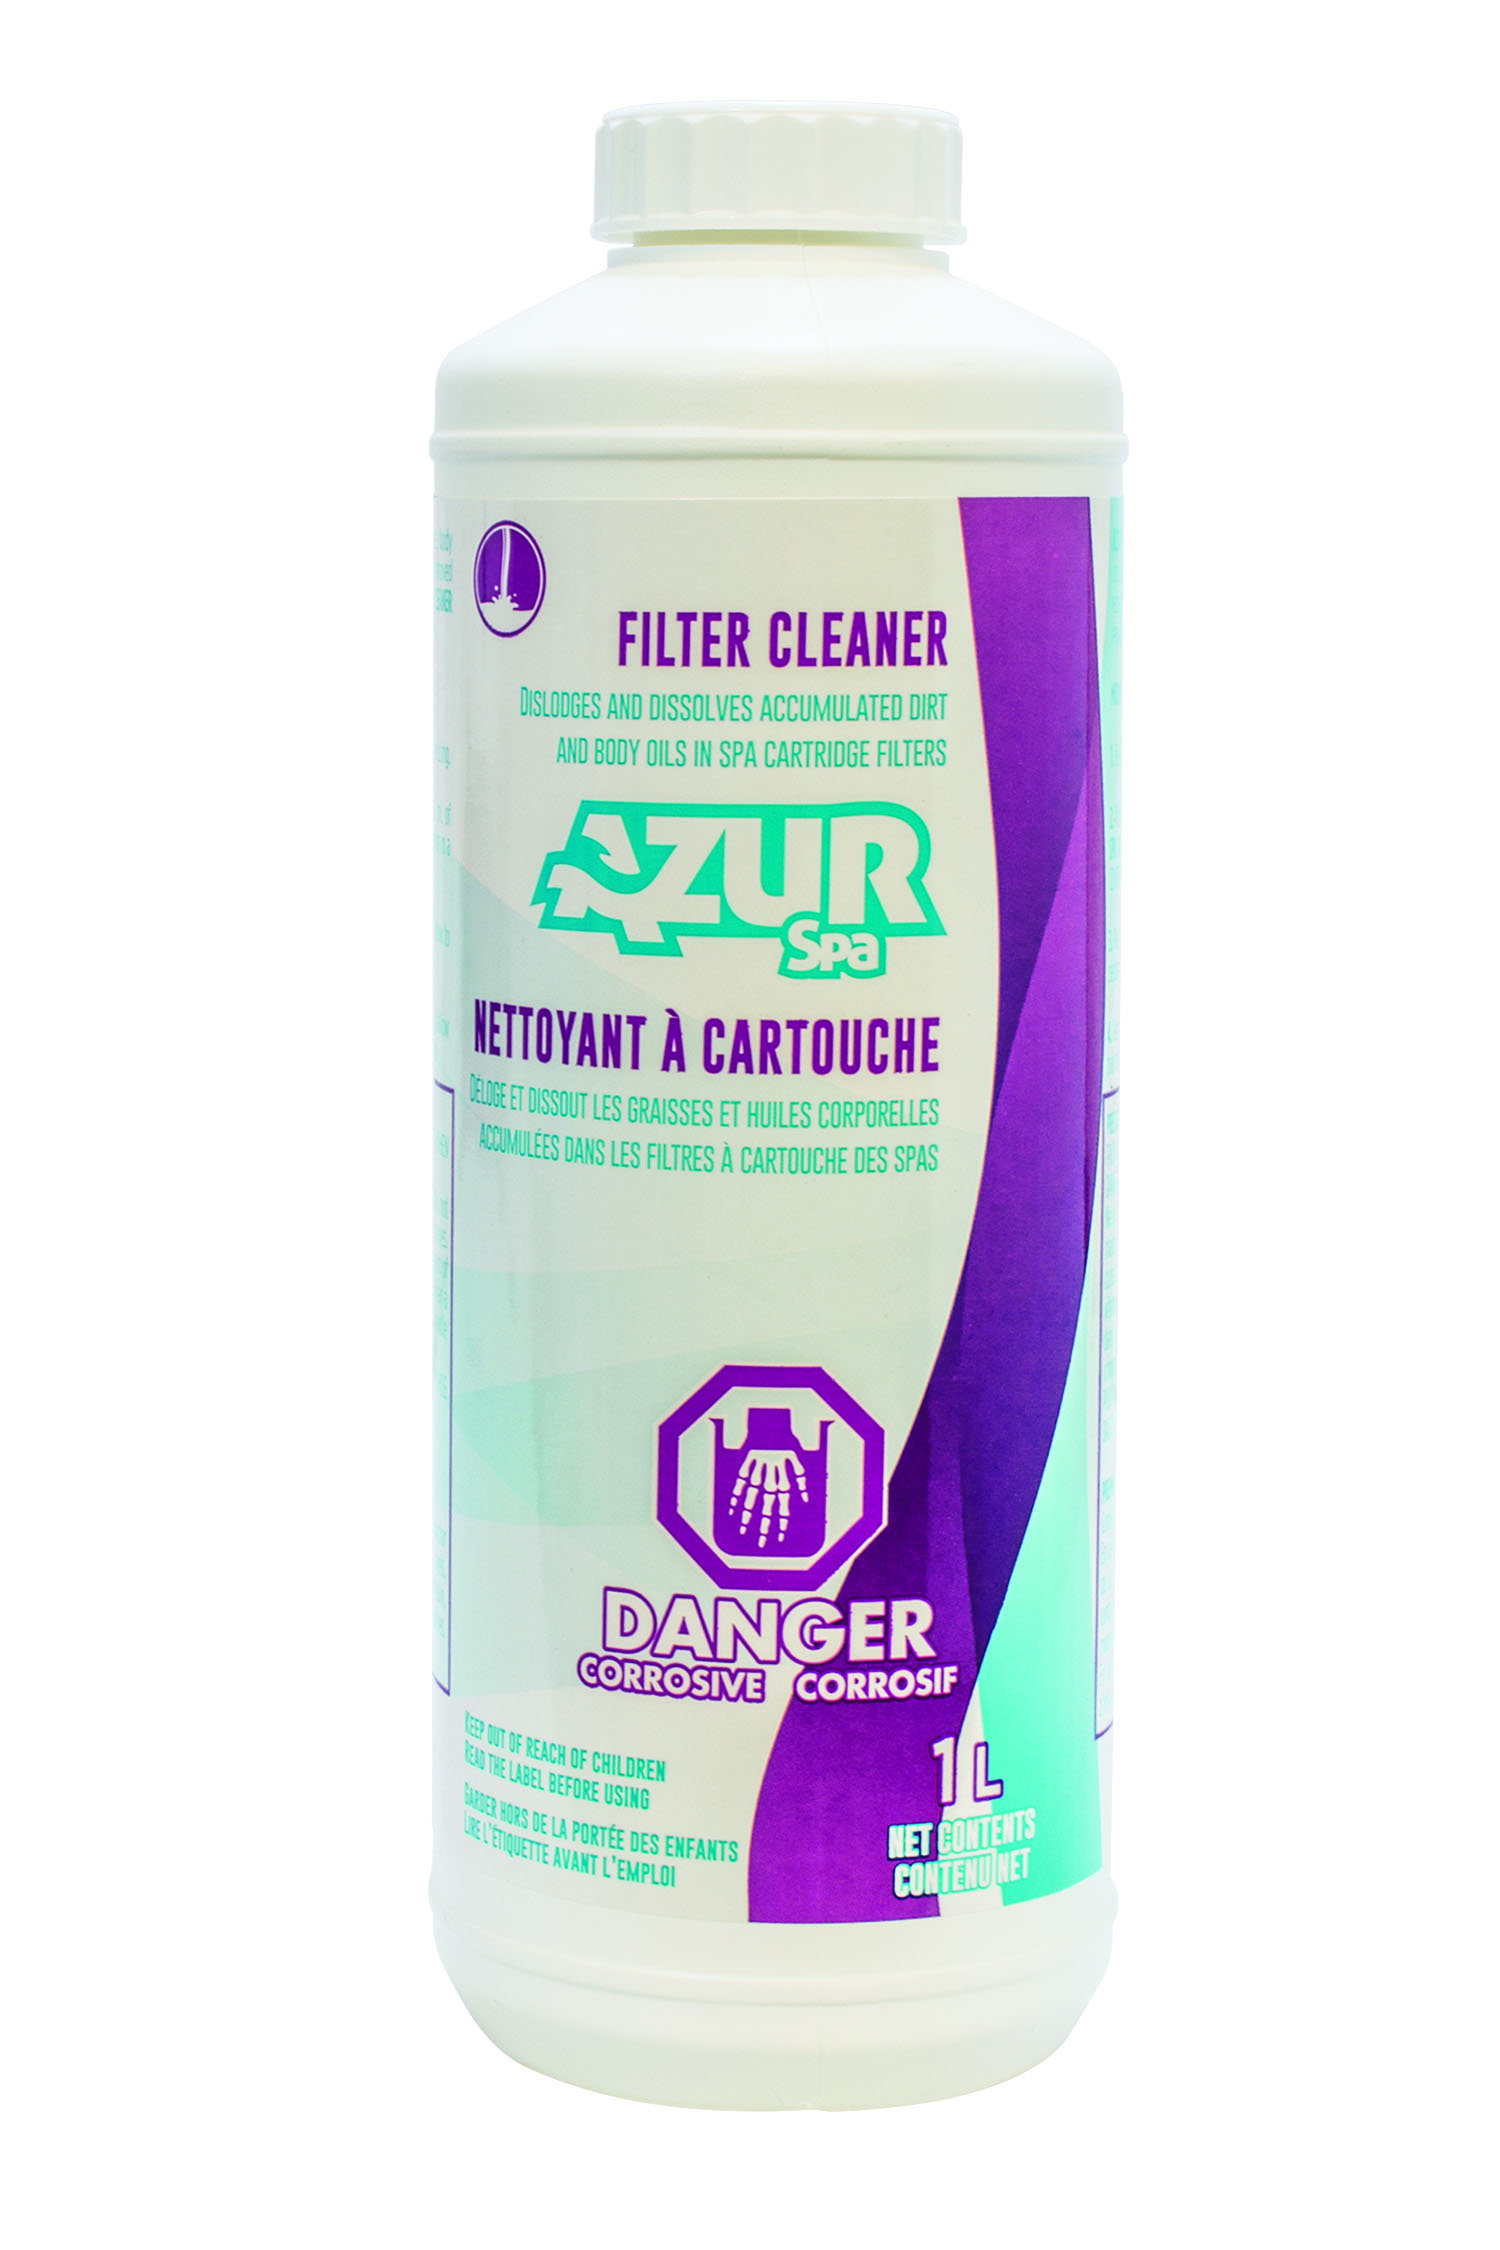 Nettoyant pour Filtre à Cartouche | Filter Cleaner |Azur Spa